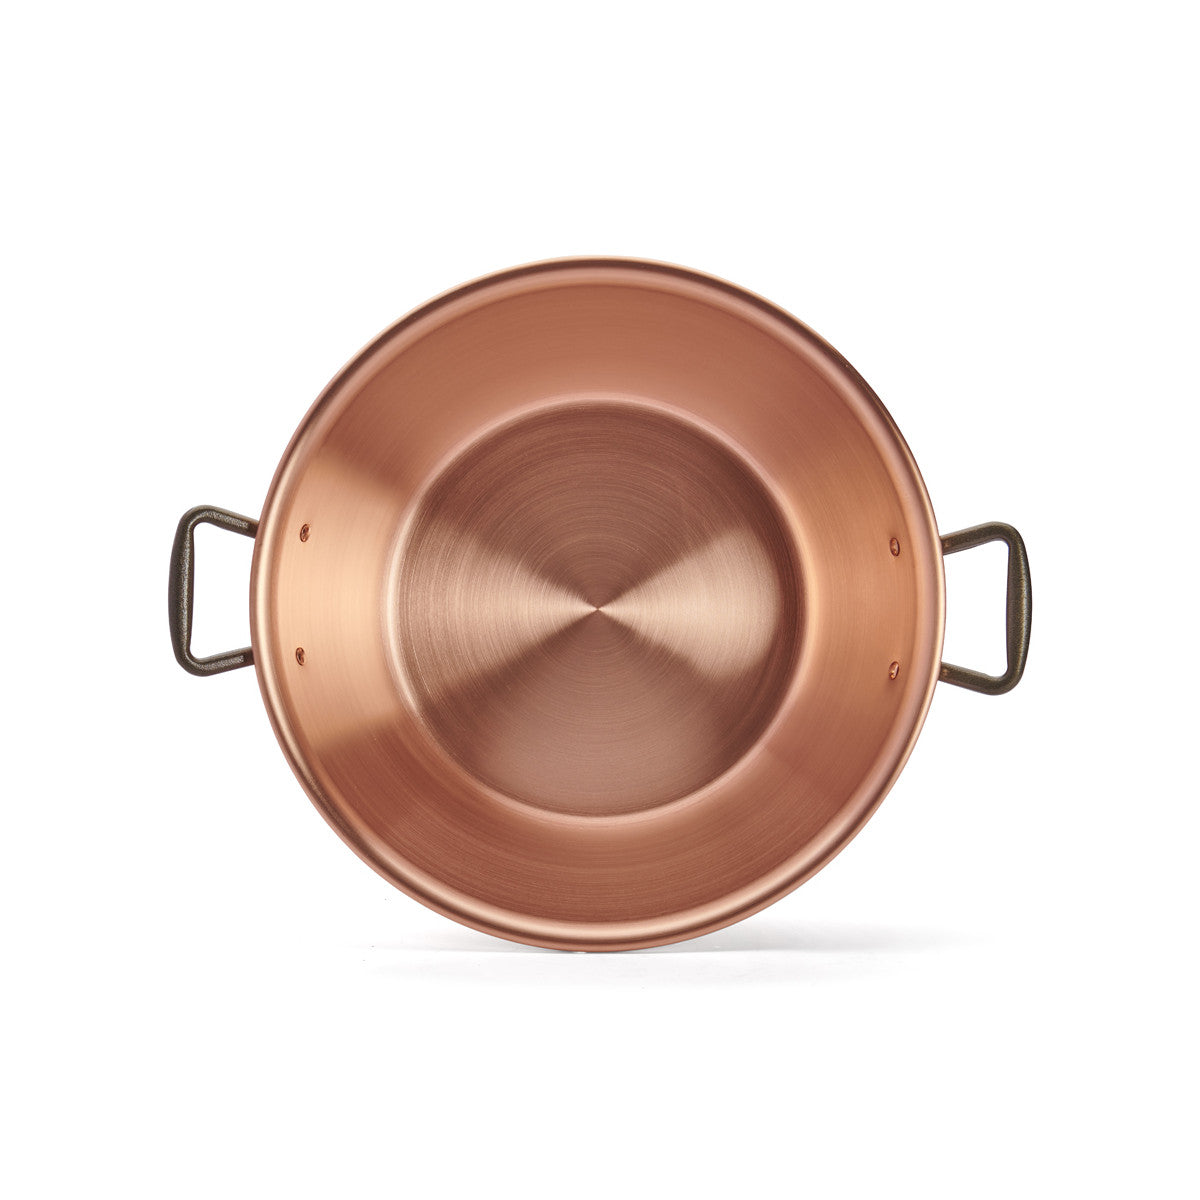 De Buyer copper jam pan, heavy version